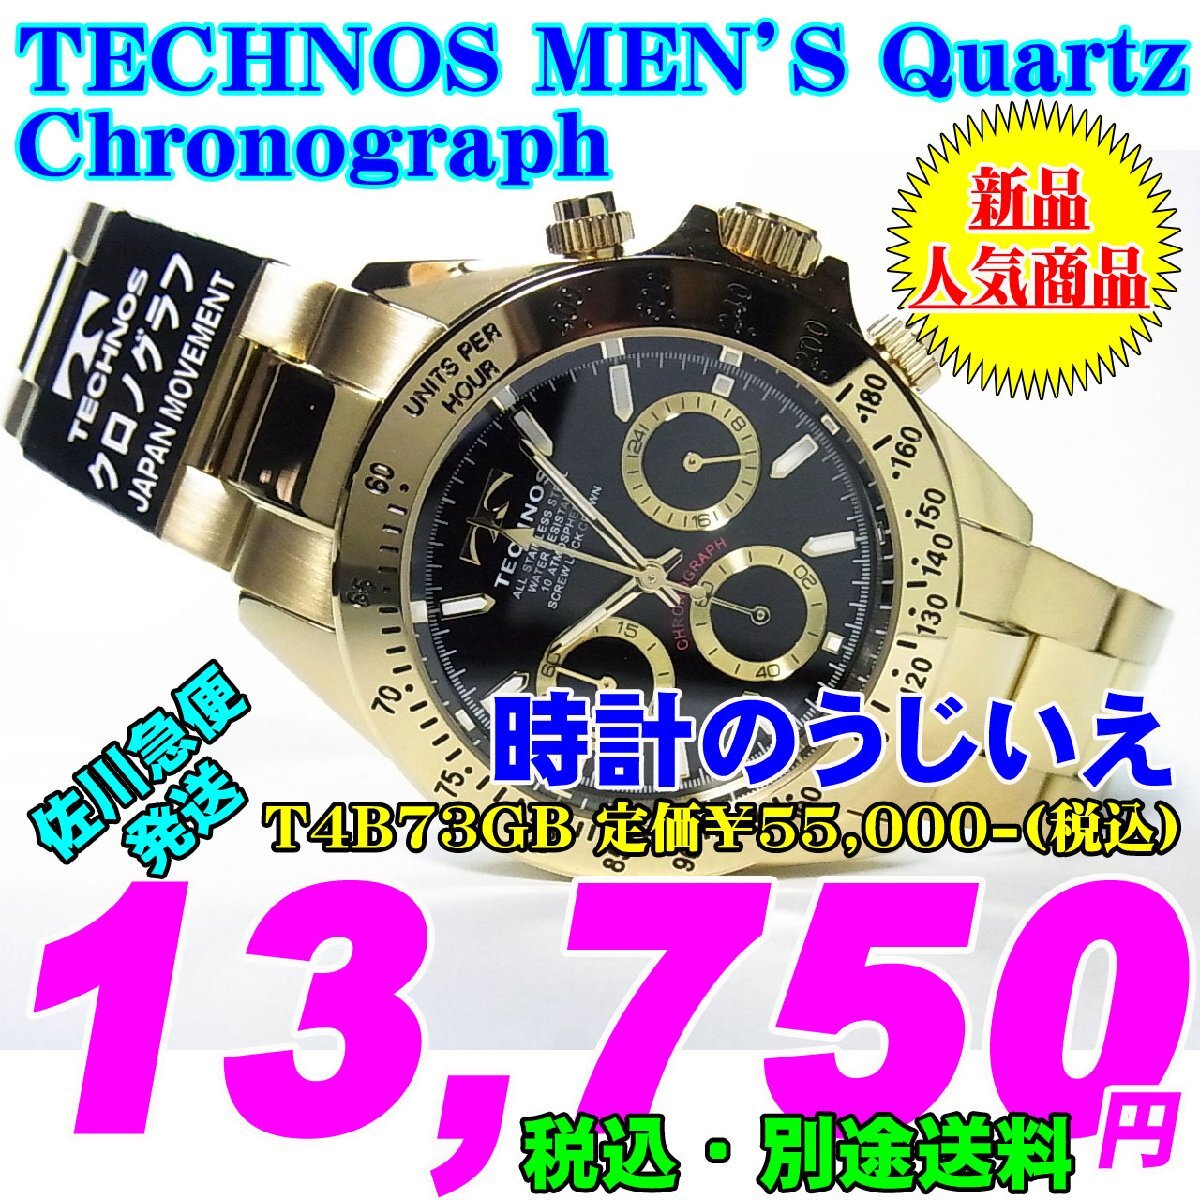 TECHNOS テクノス MEN'S 紳士 Quartz クォーツ Chronograph クロノグラフ T4B73GB 定価￥55,000-(税込) 新品です。_画像1